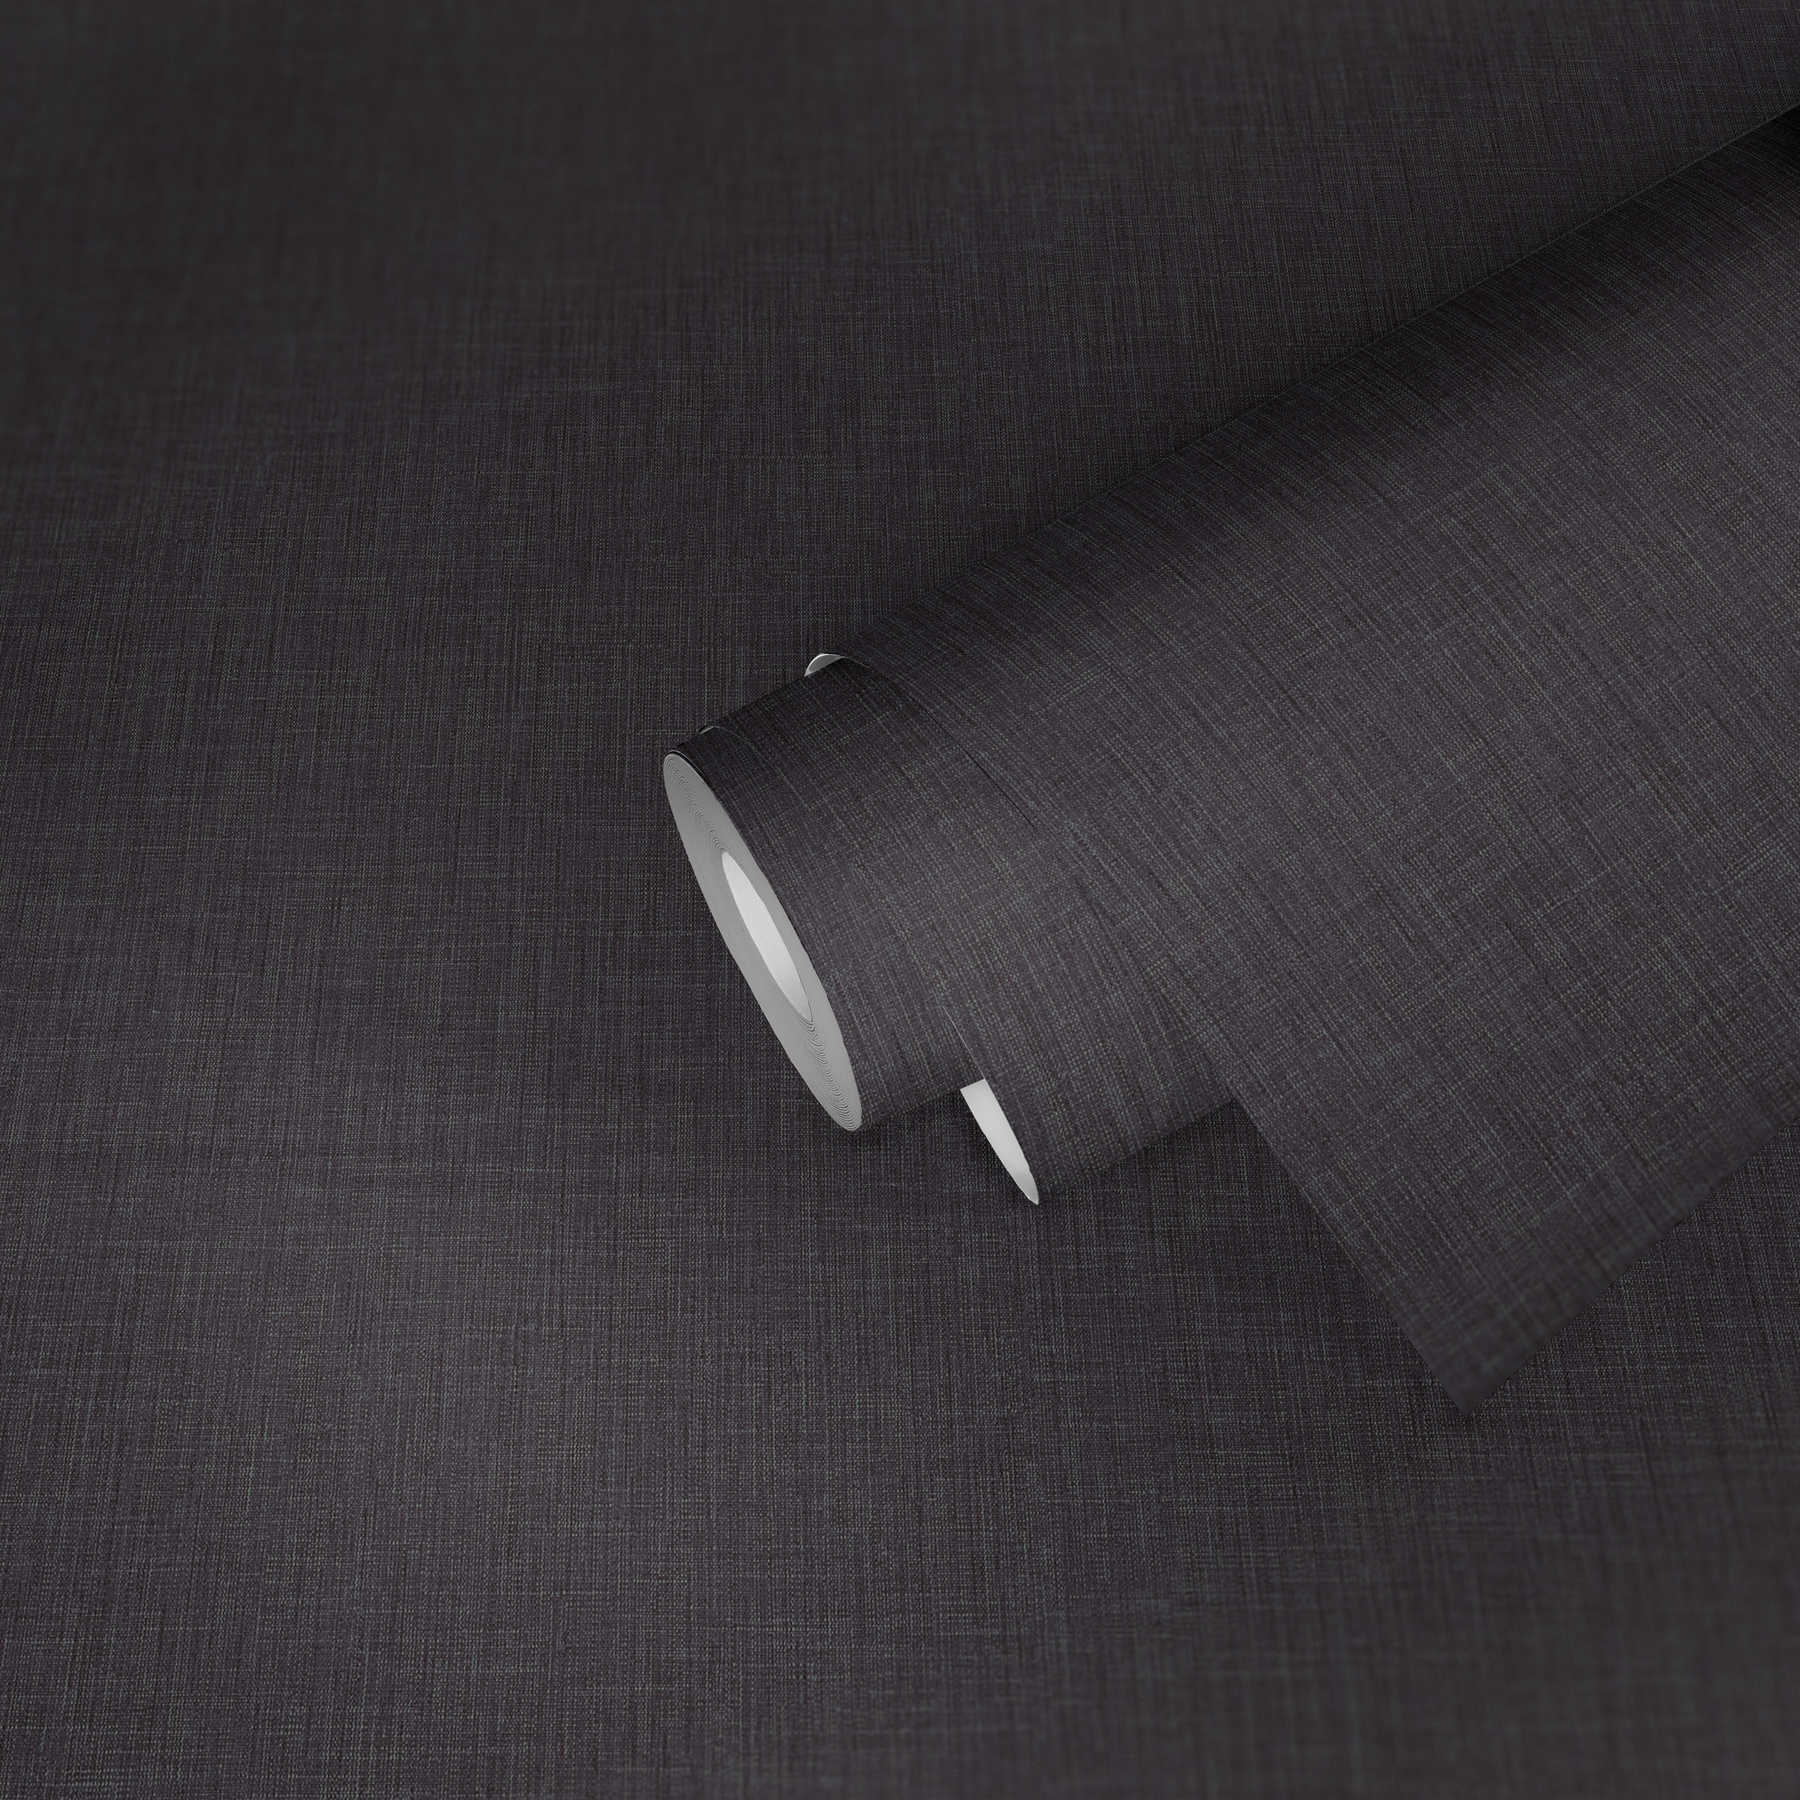             Effen behangpapier met textielstructuur - zwart
        